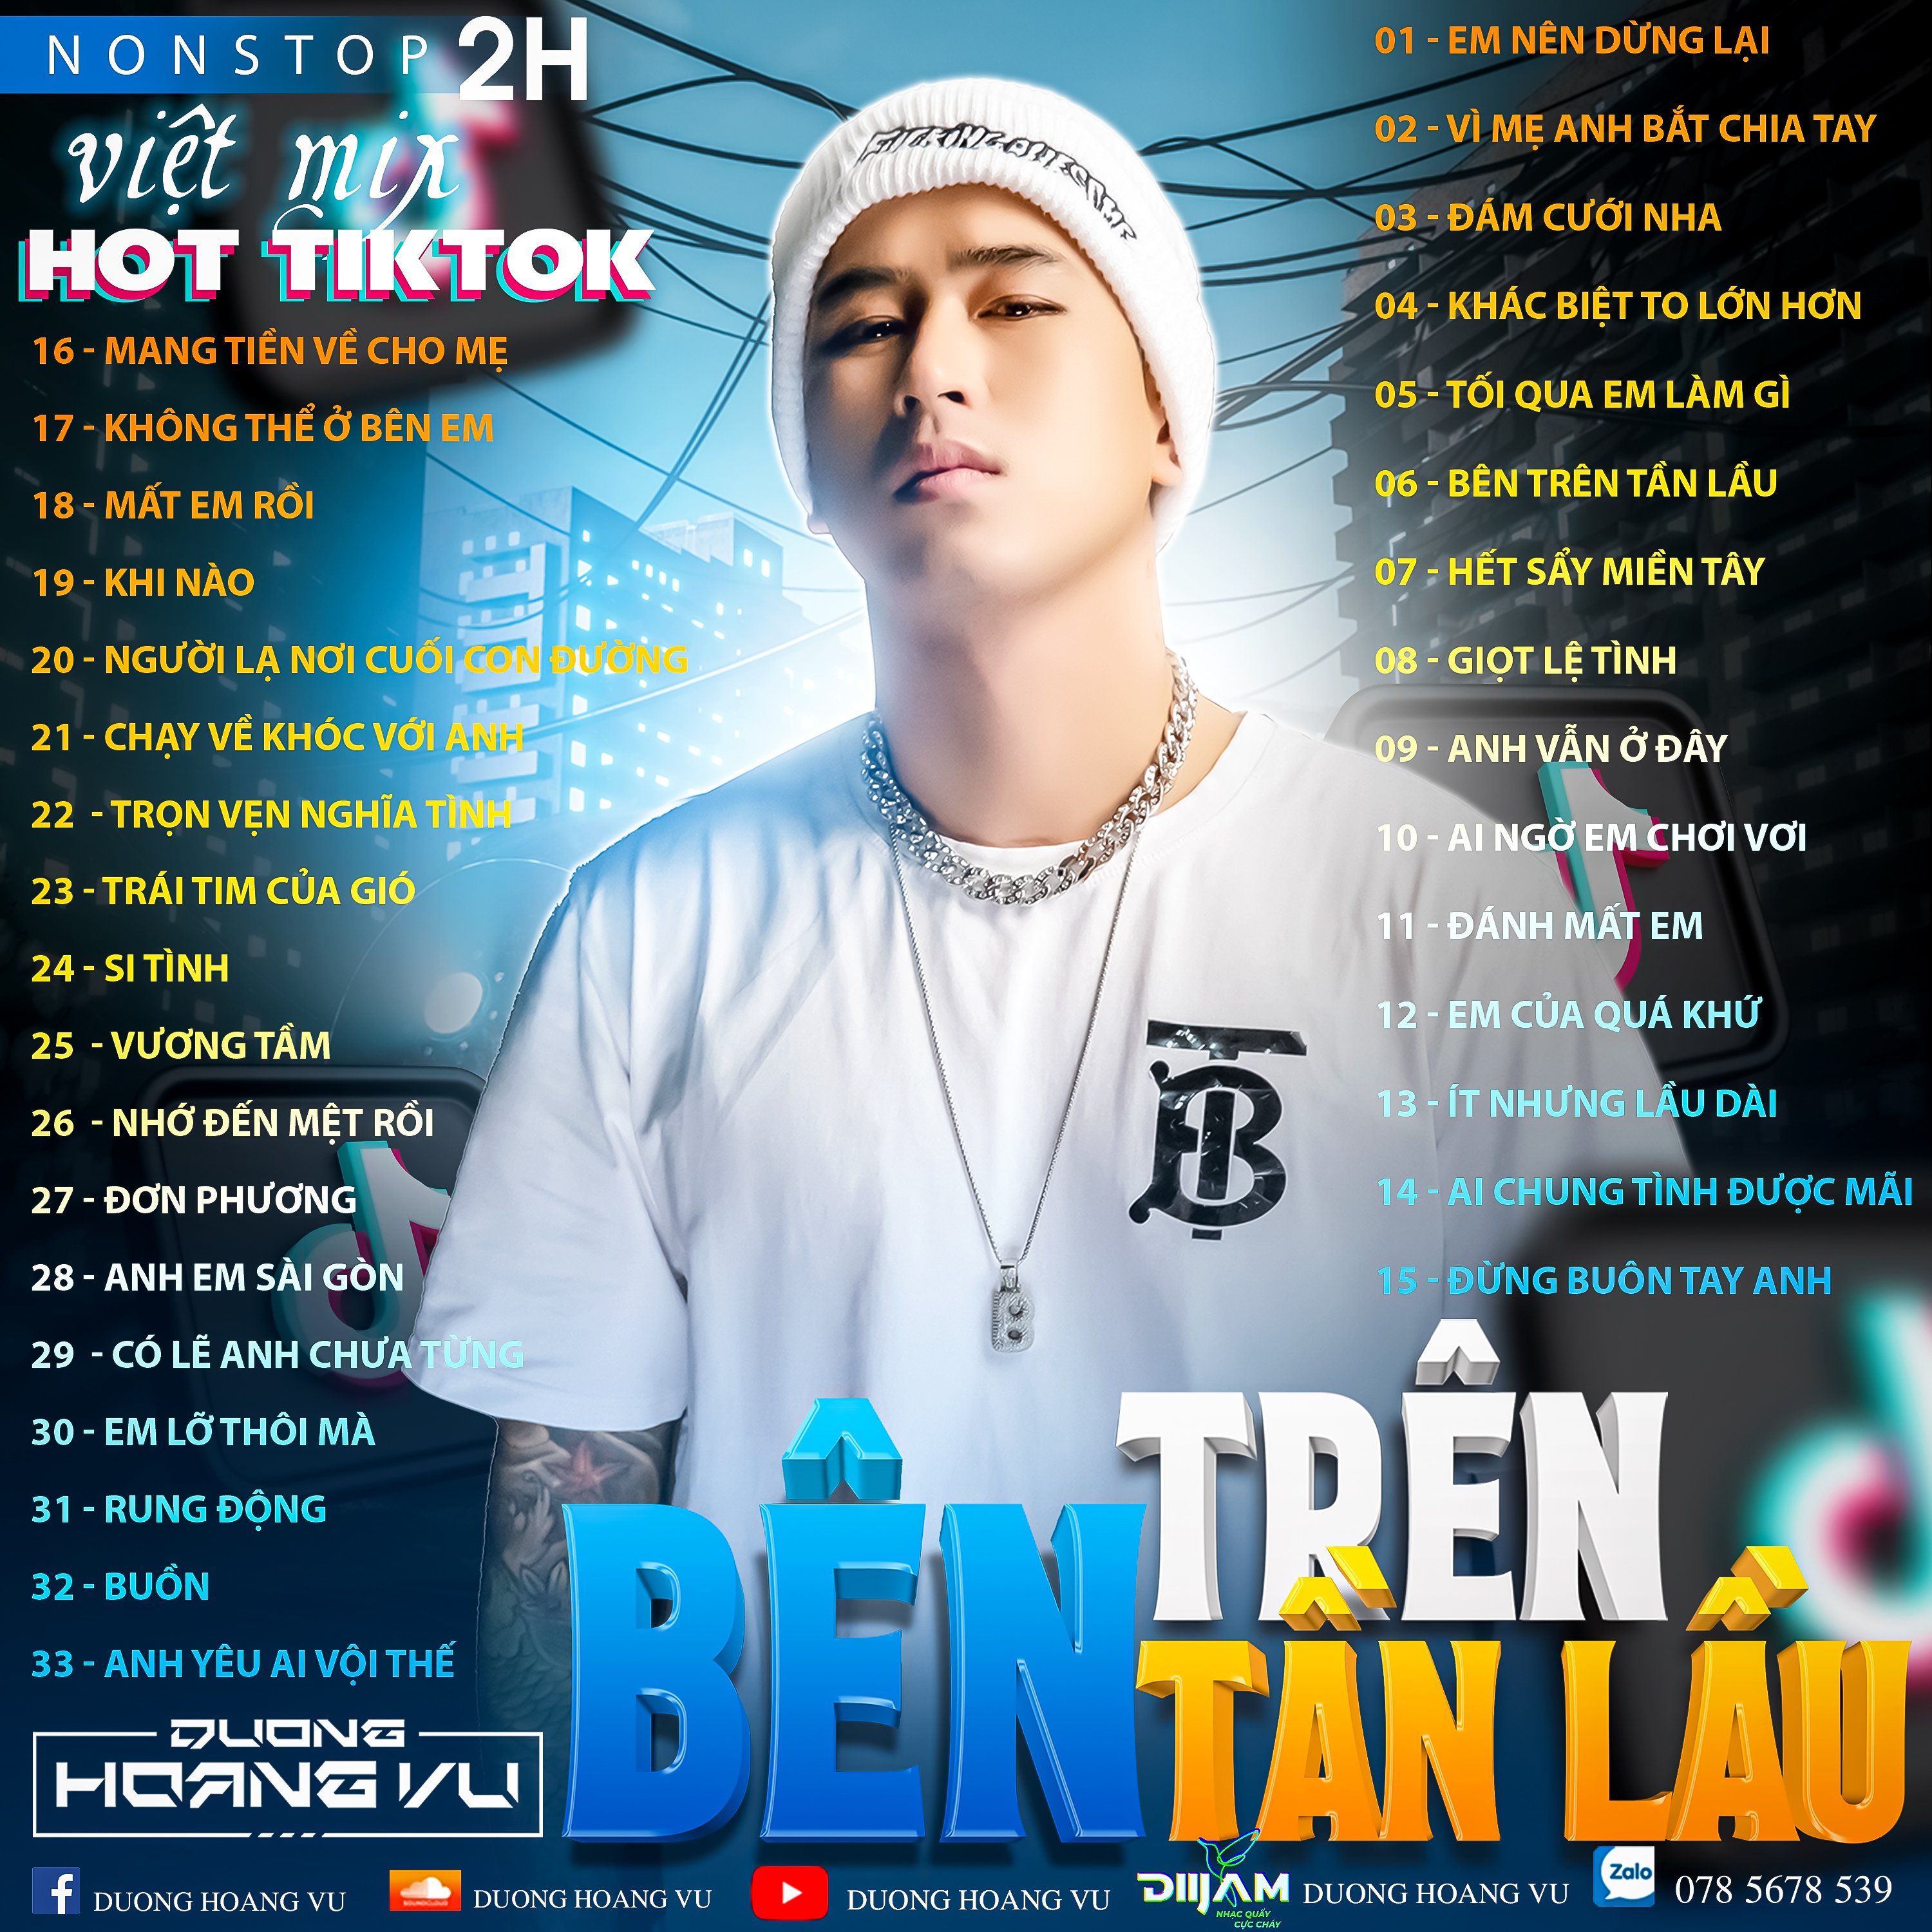 Tikiake (Demo ) Nst Việt Mix Hot tiktok 2h - 2022 - DJ Dương Hoàng Vũ Mix Mua Full IB Zalo 078.5678.539